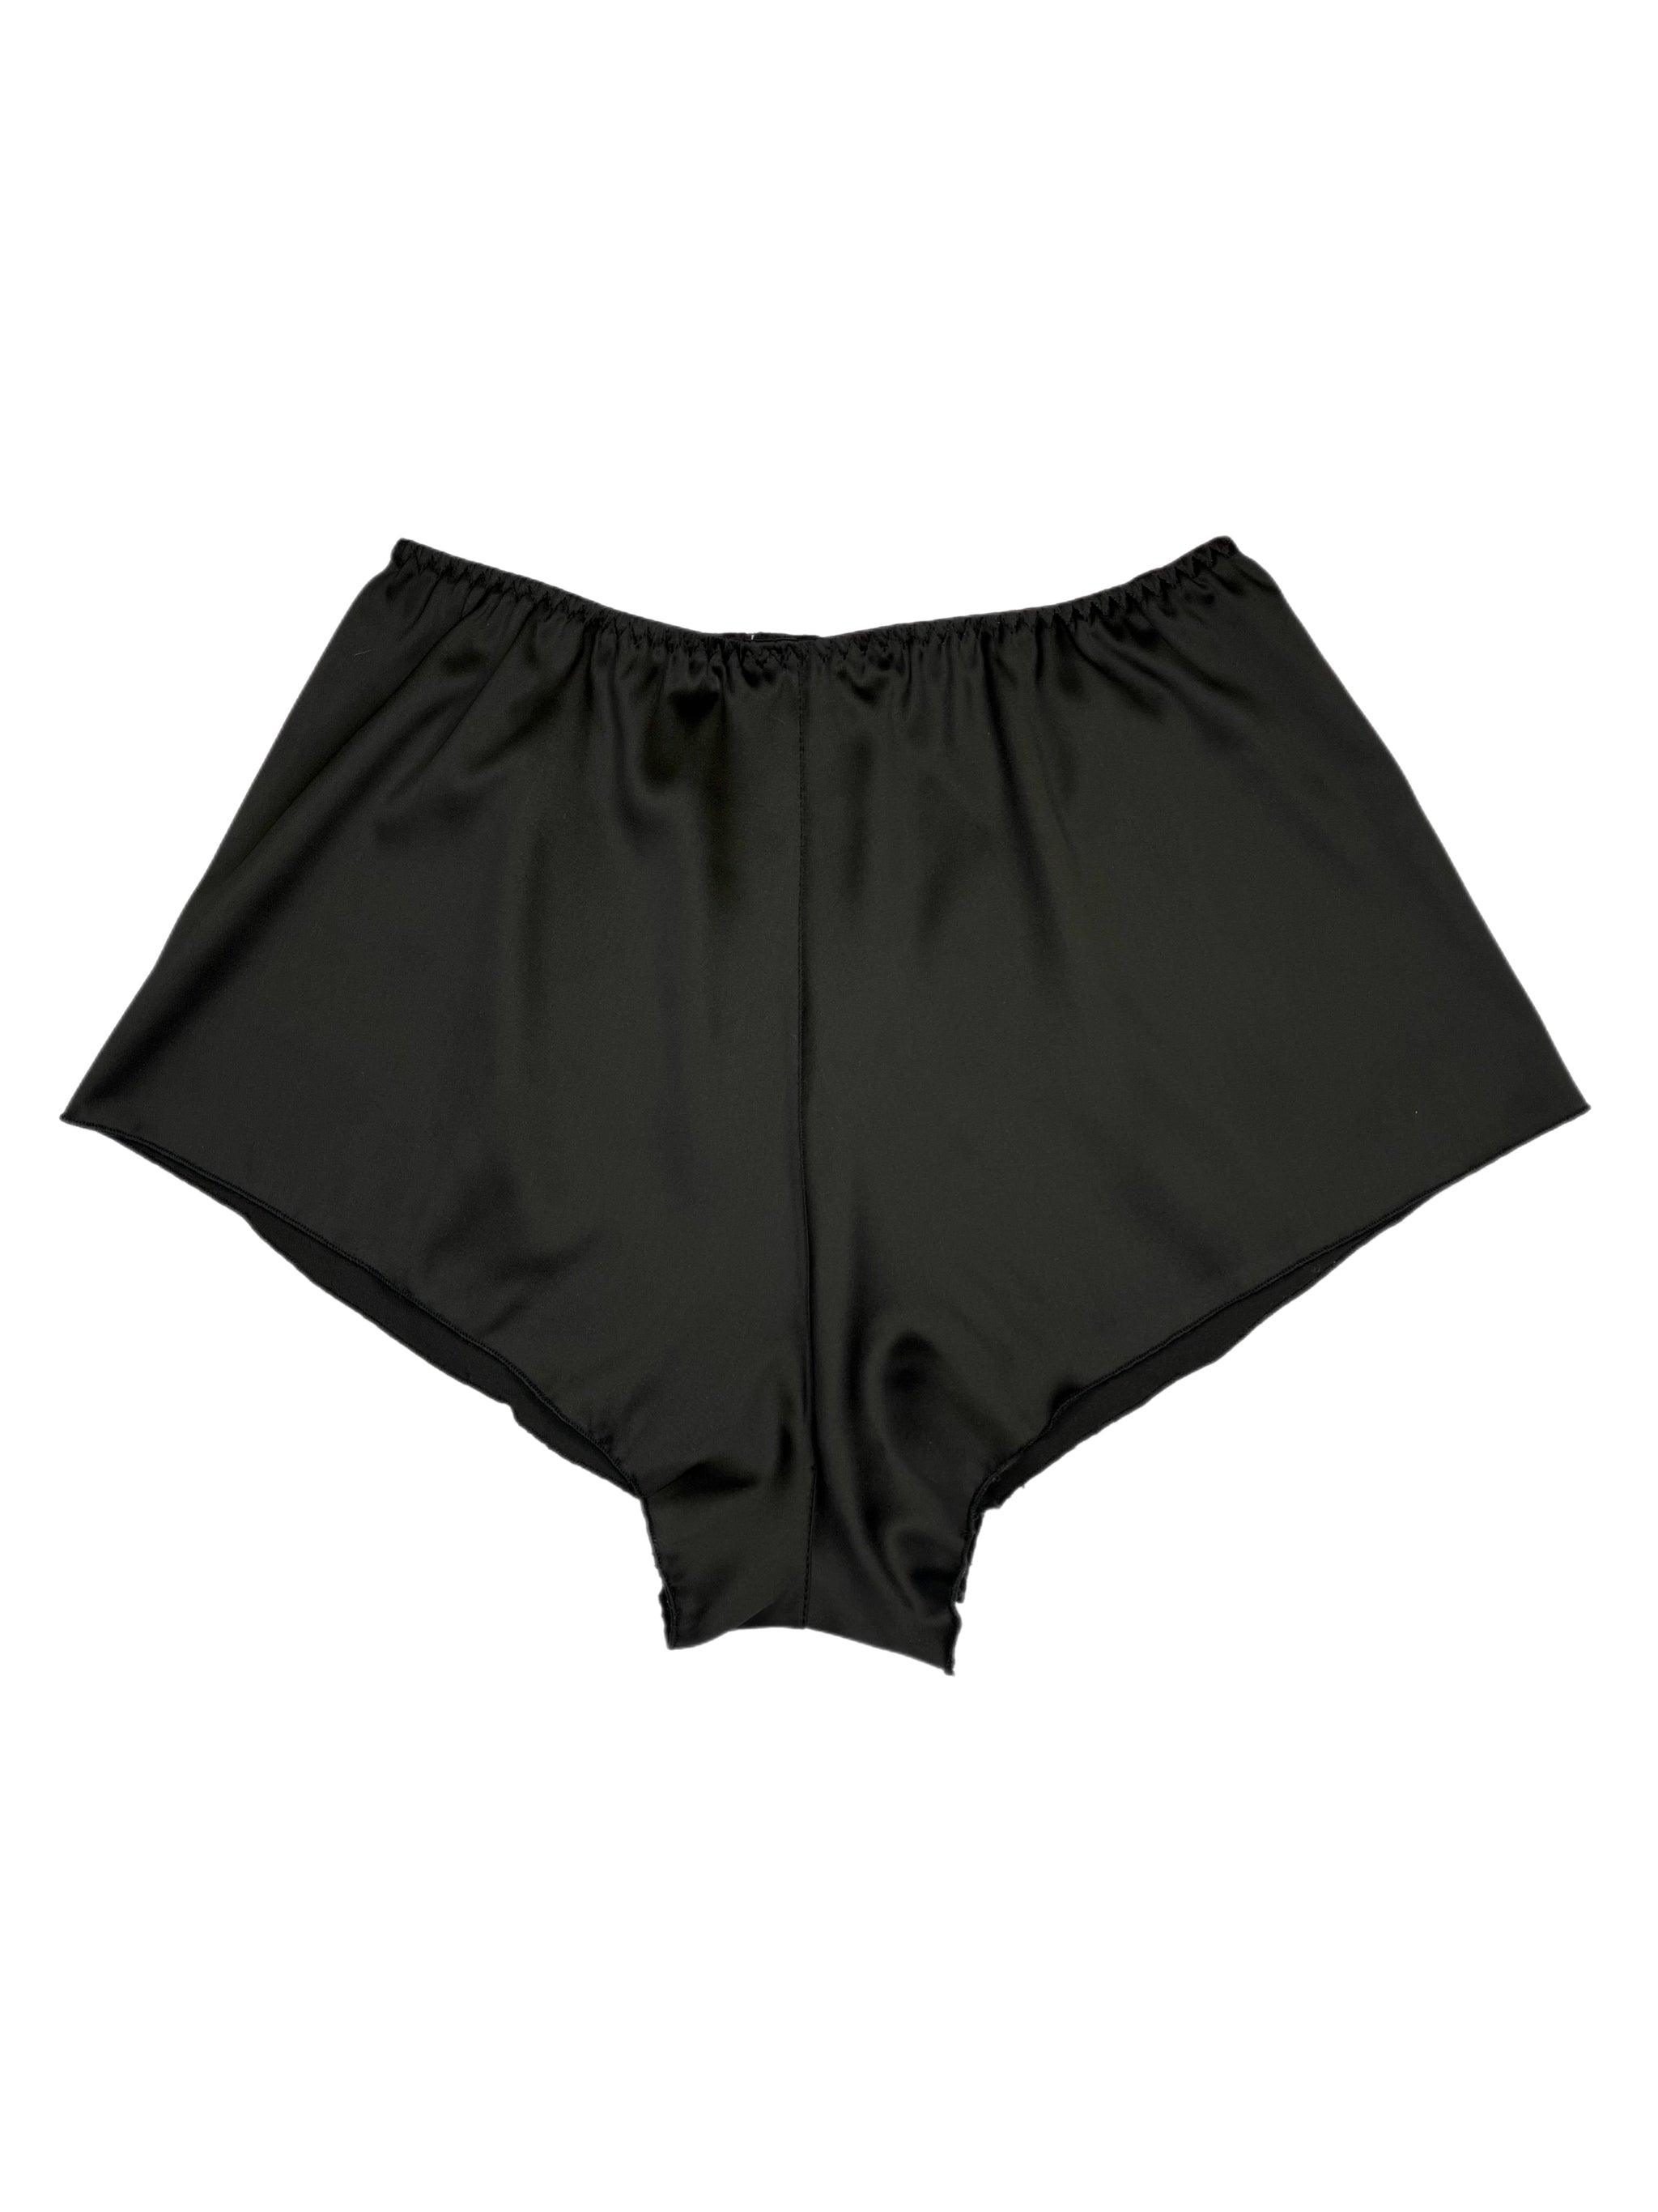 Kiki black shorts - yesUndress